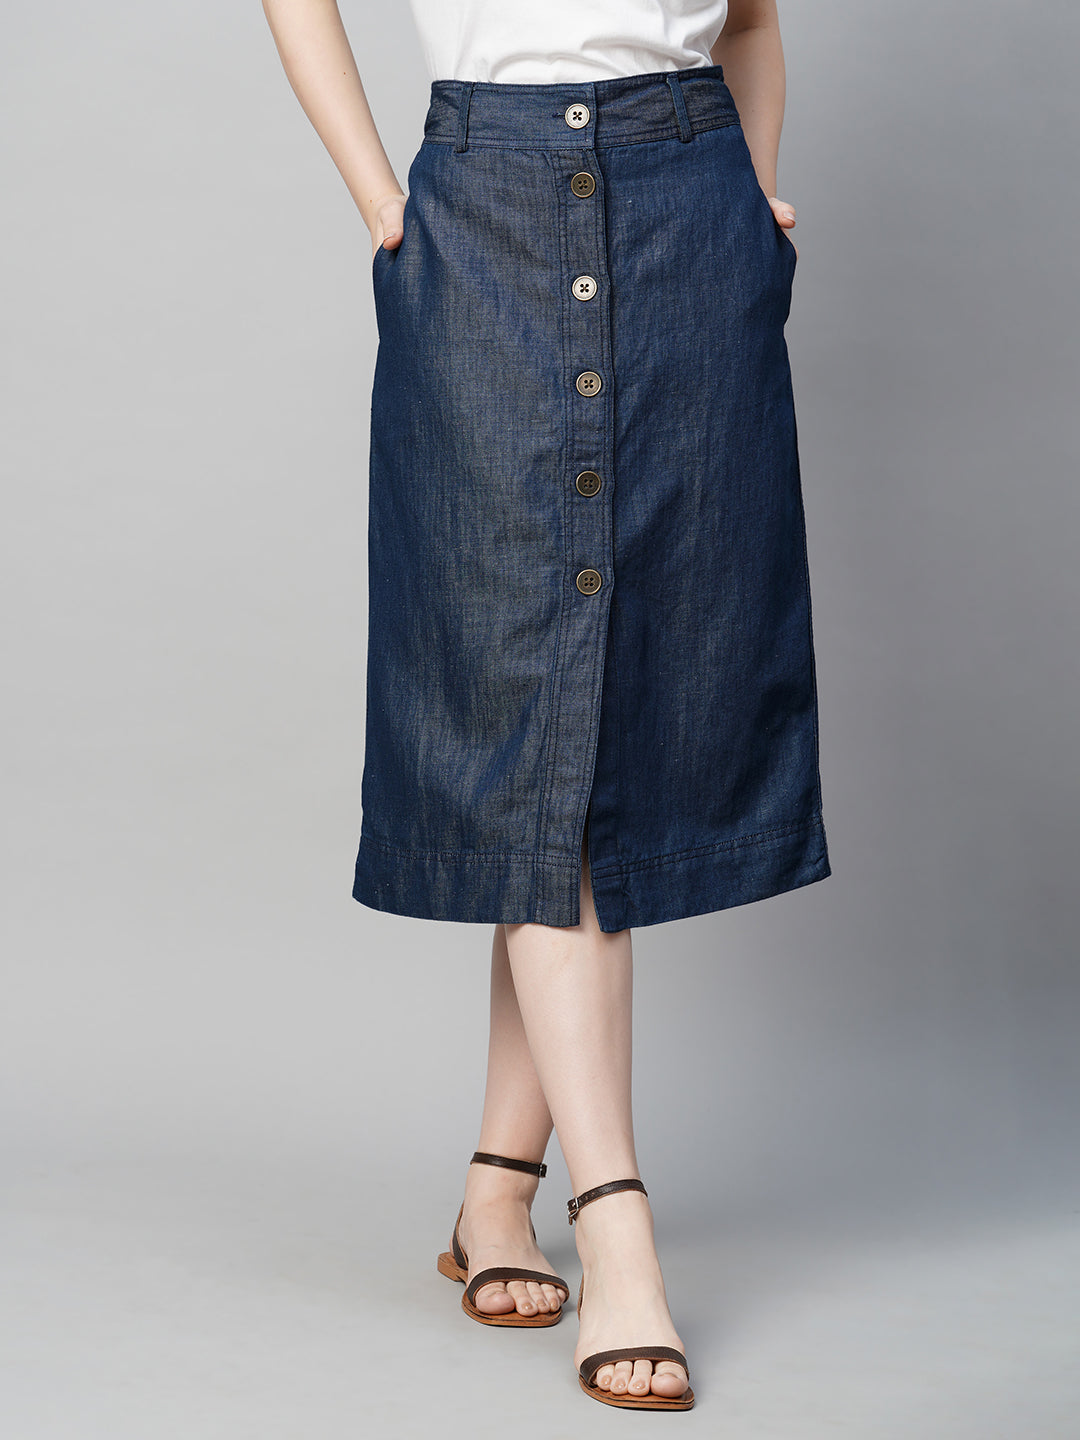 Women's Cotton Linen Denim Regular Fit Skirt